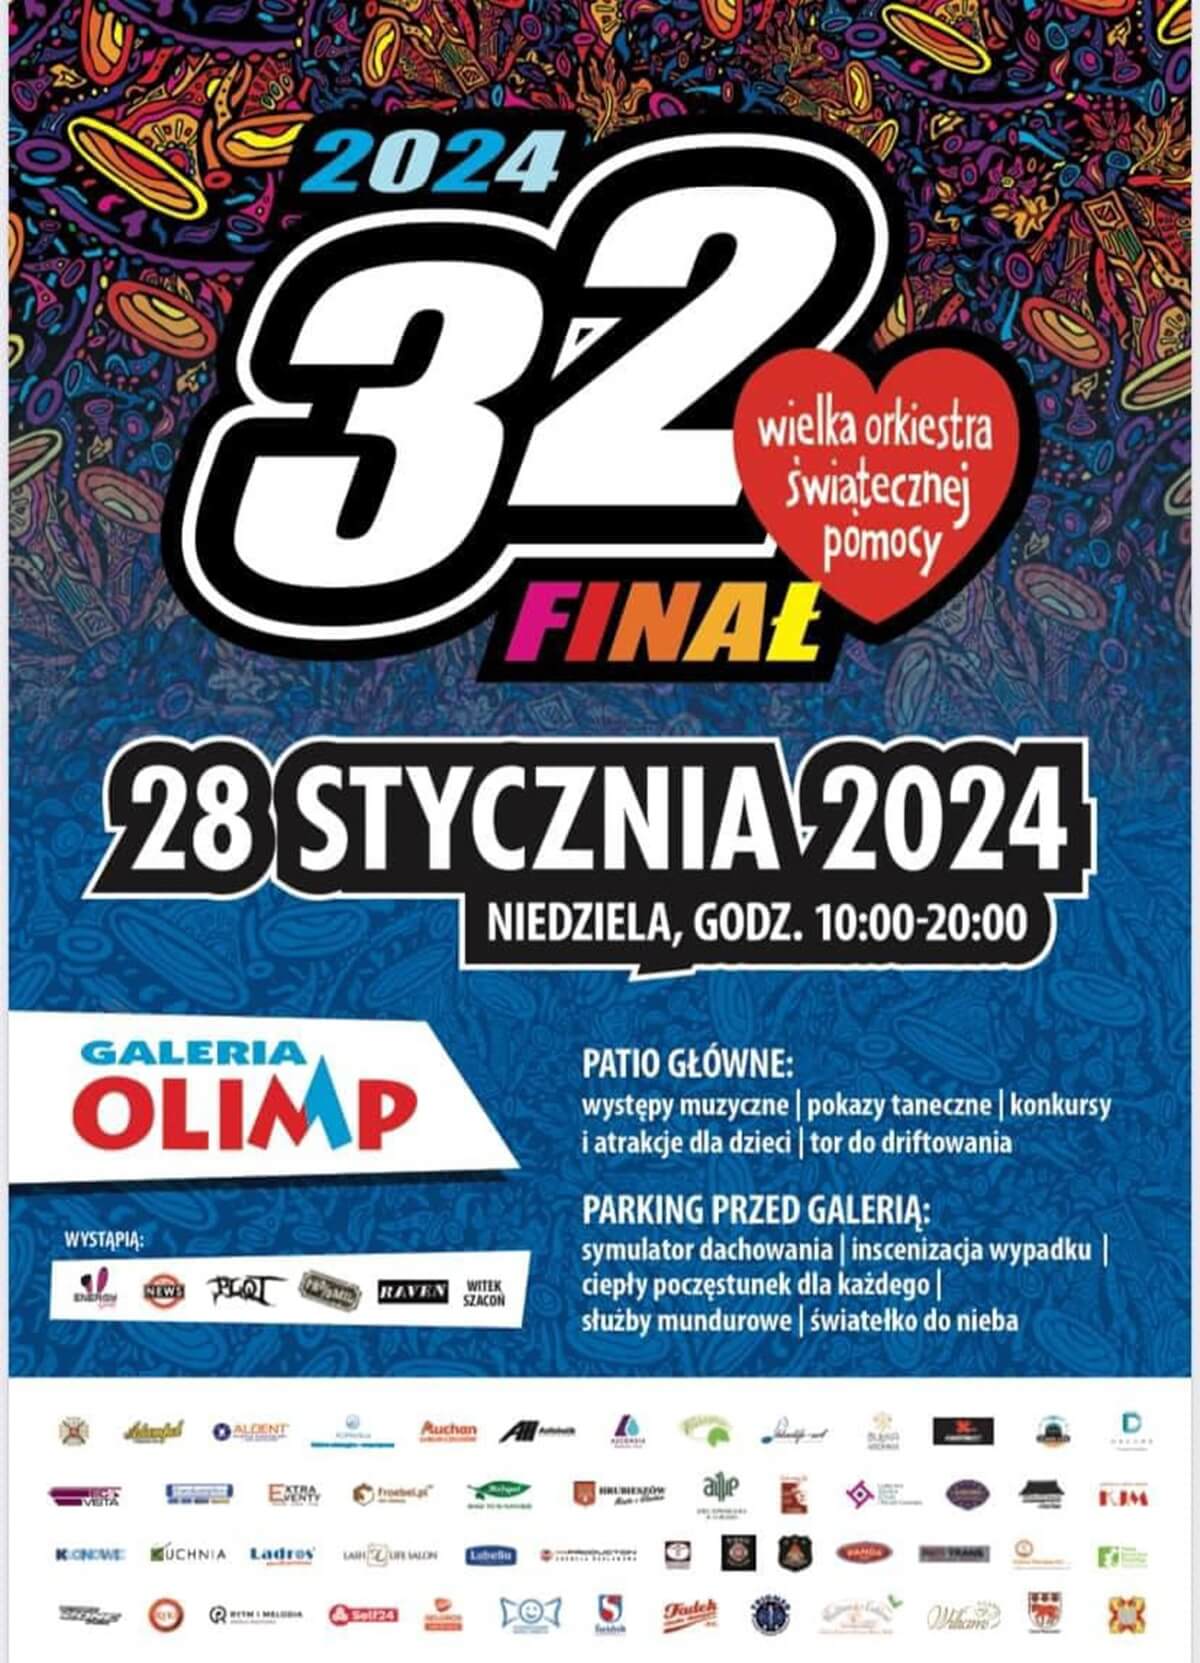 Finał WOŚP 2024 w Galerii Olimp - plakat